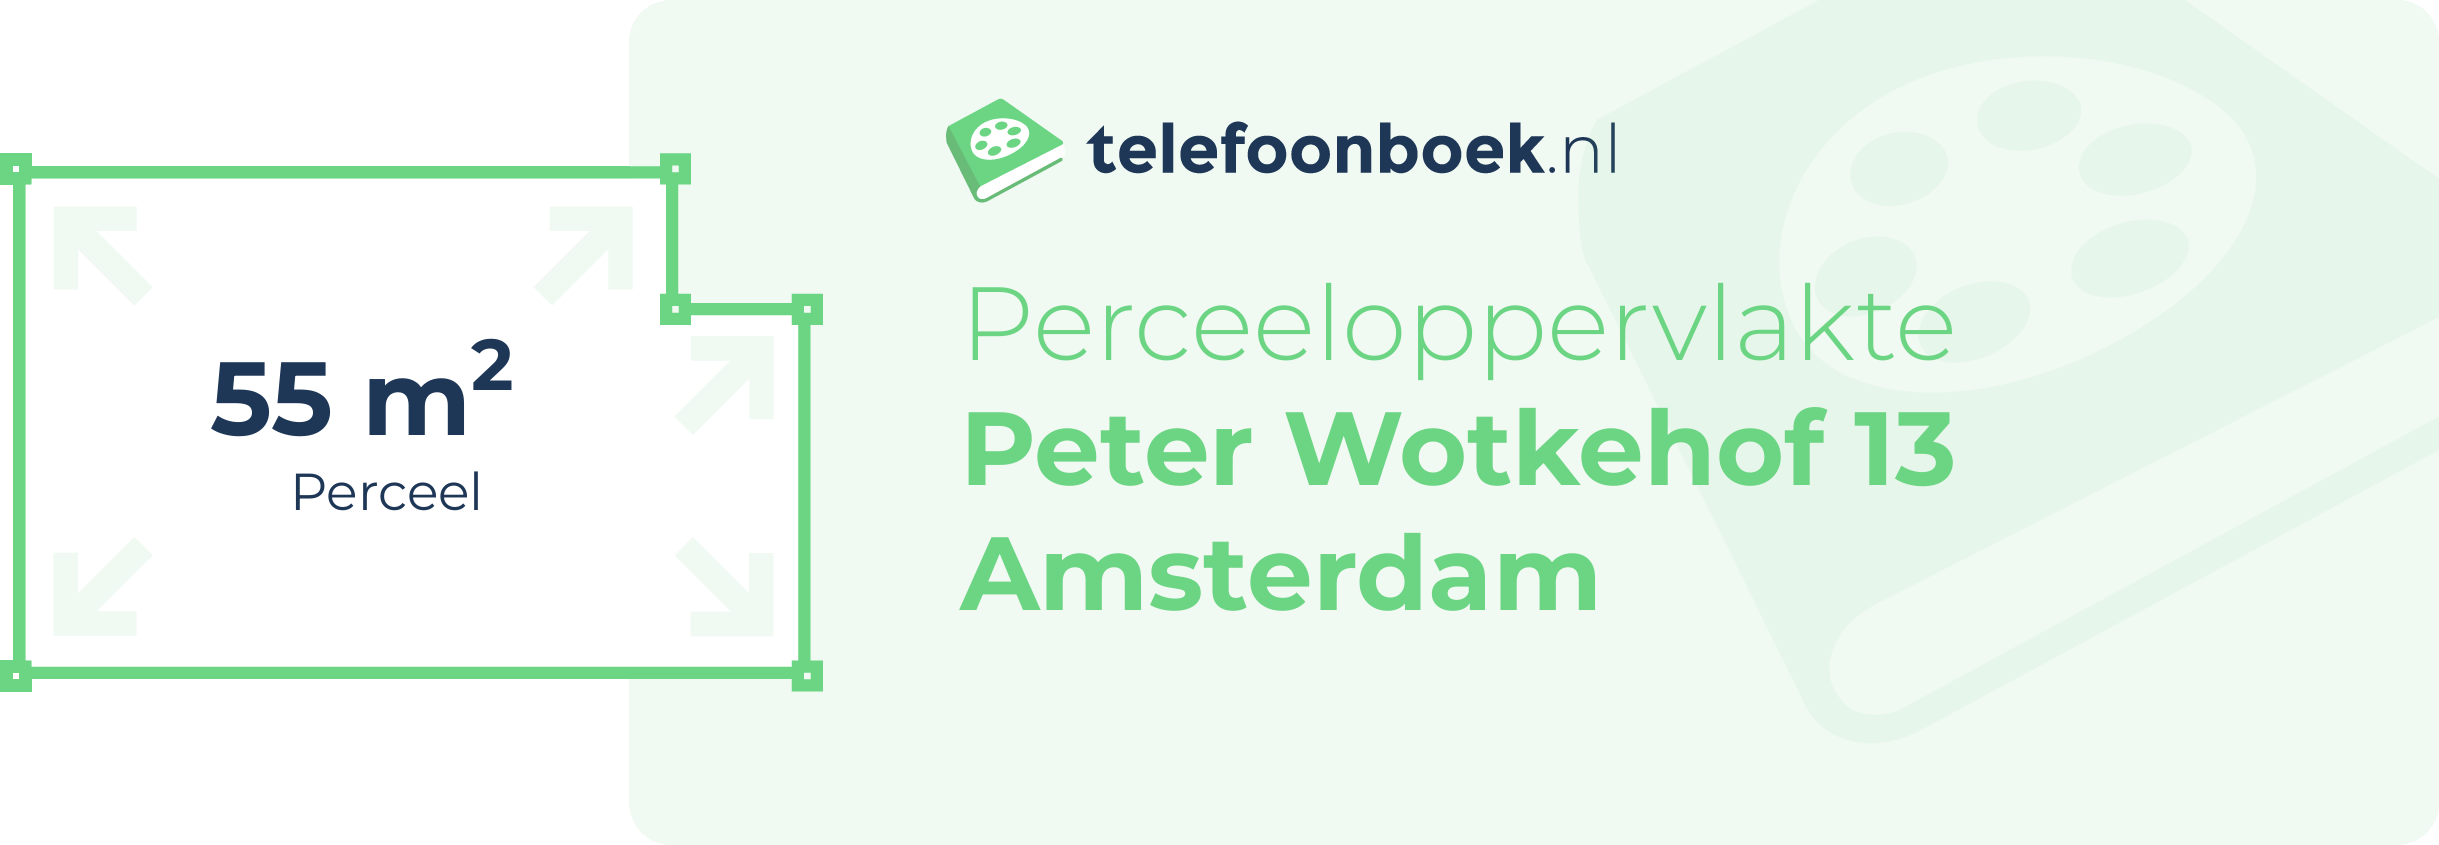 Perceeloppervlakte Peter Wotkehof 13 Amsterdam